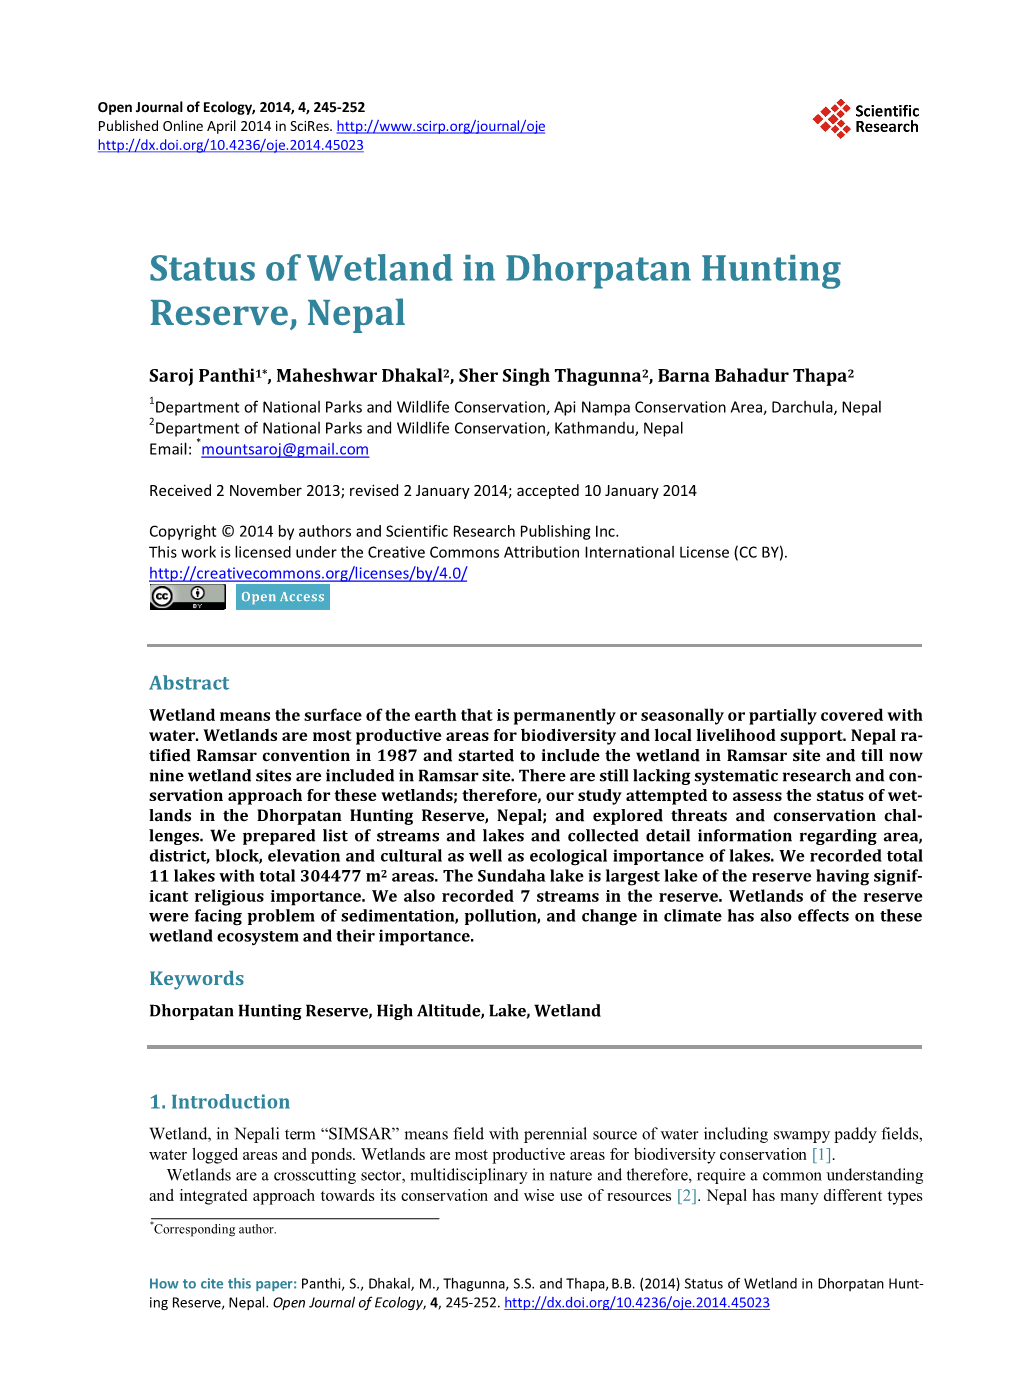 Status of Wetland in Dhorpatan Hunting Reserve, Nepal